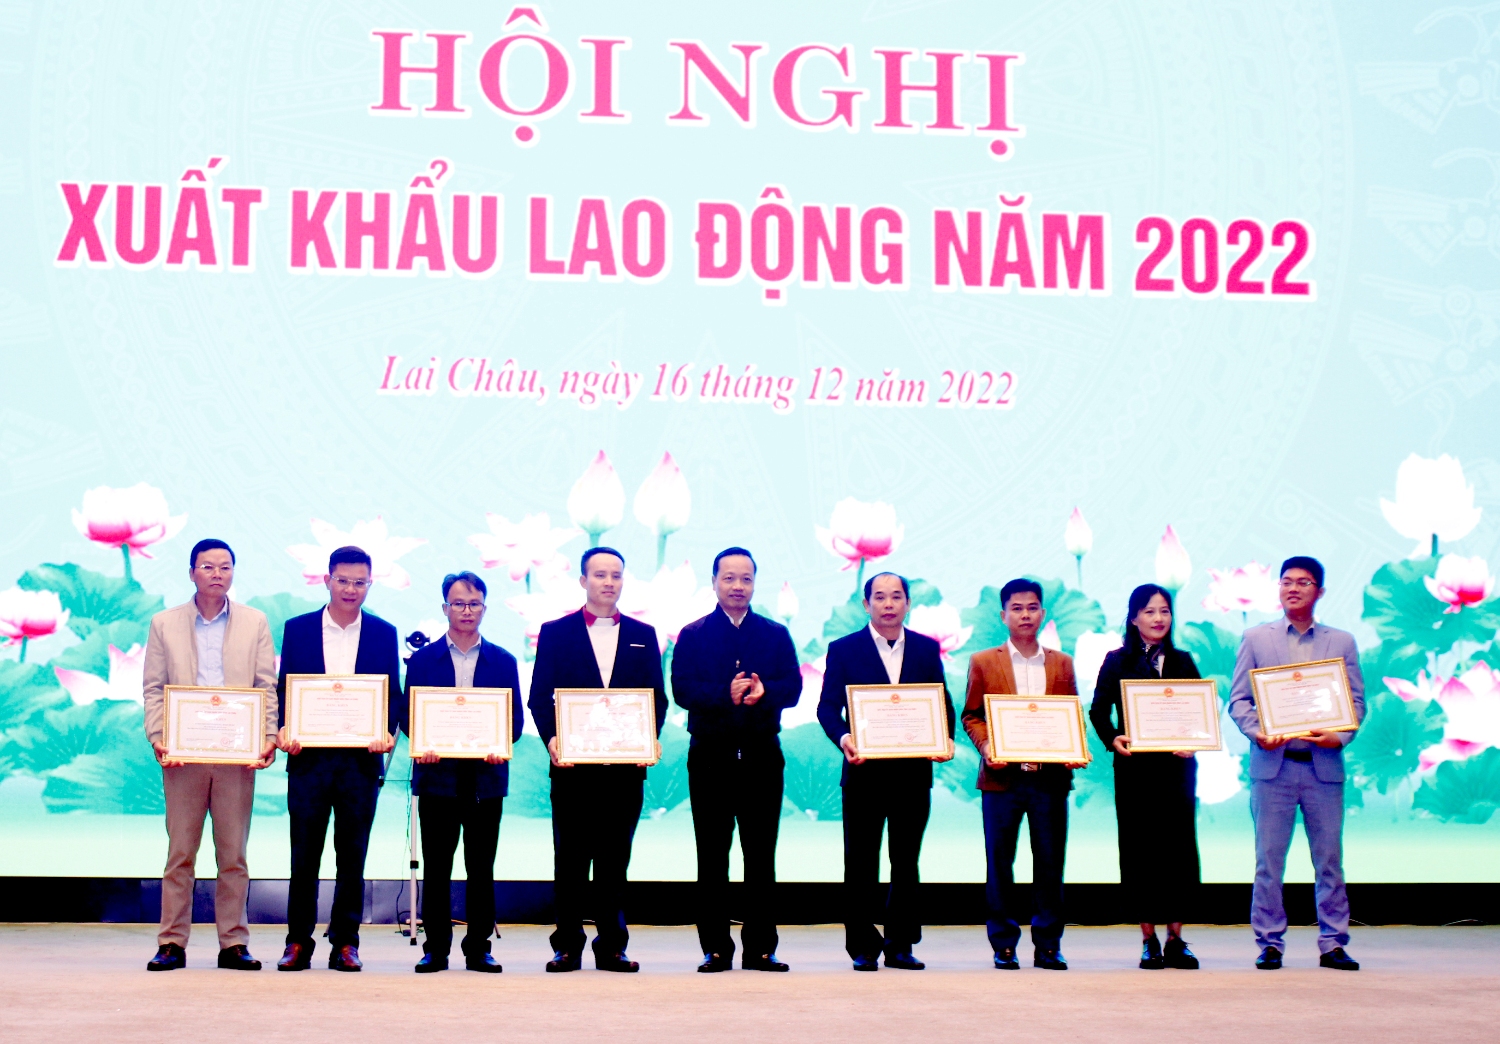 Chủ tịch UBND tỉnh Trần Tiến Dũng trao Bằng khen cho các tập thể có thành tích xuất sắc trong thực hiện công tác xuất khẩu lao động trên địa bàn tỉnh giai đoạn 2017 - 2022